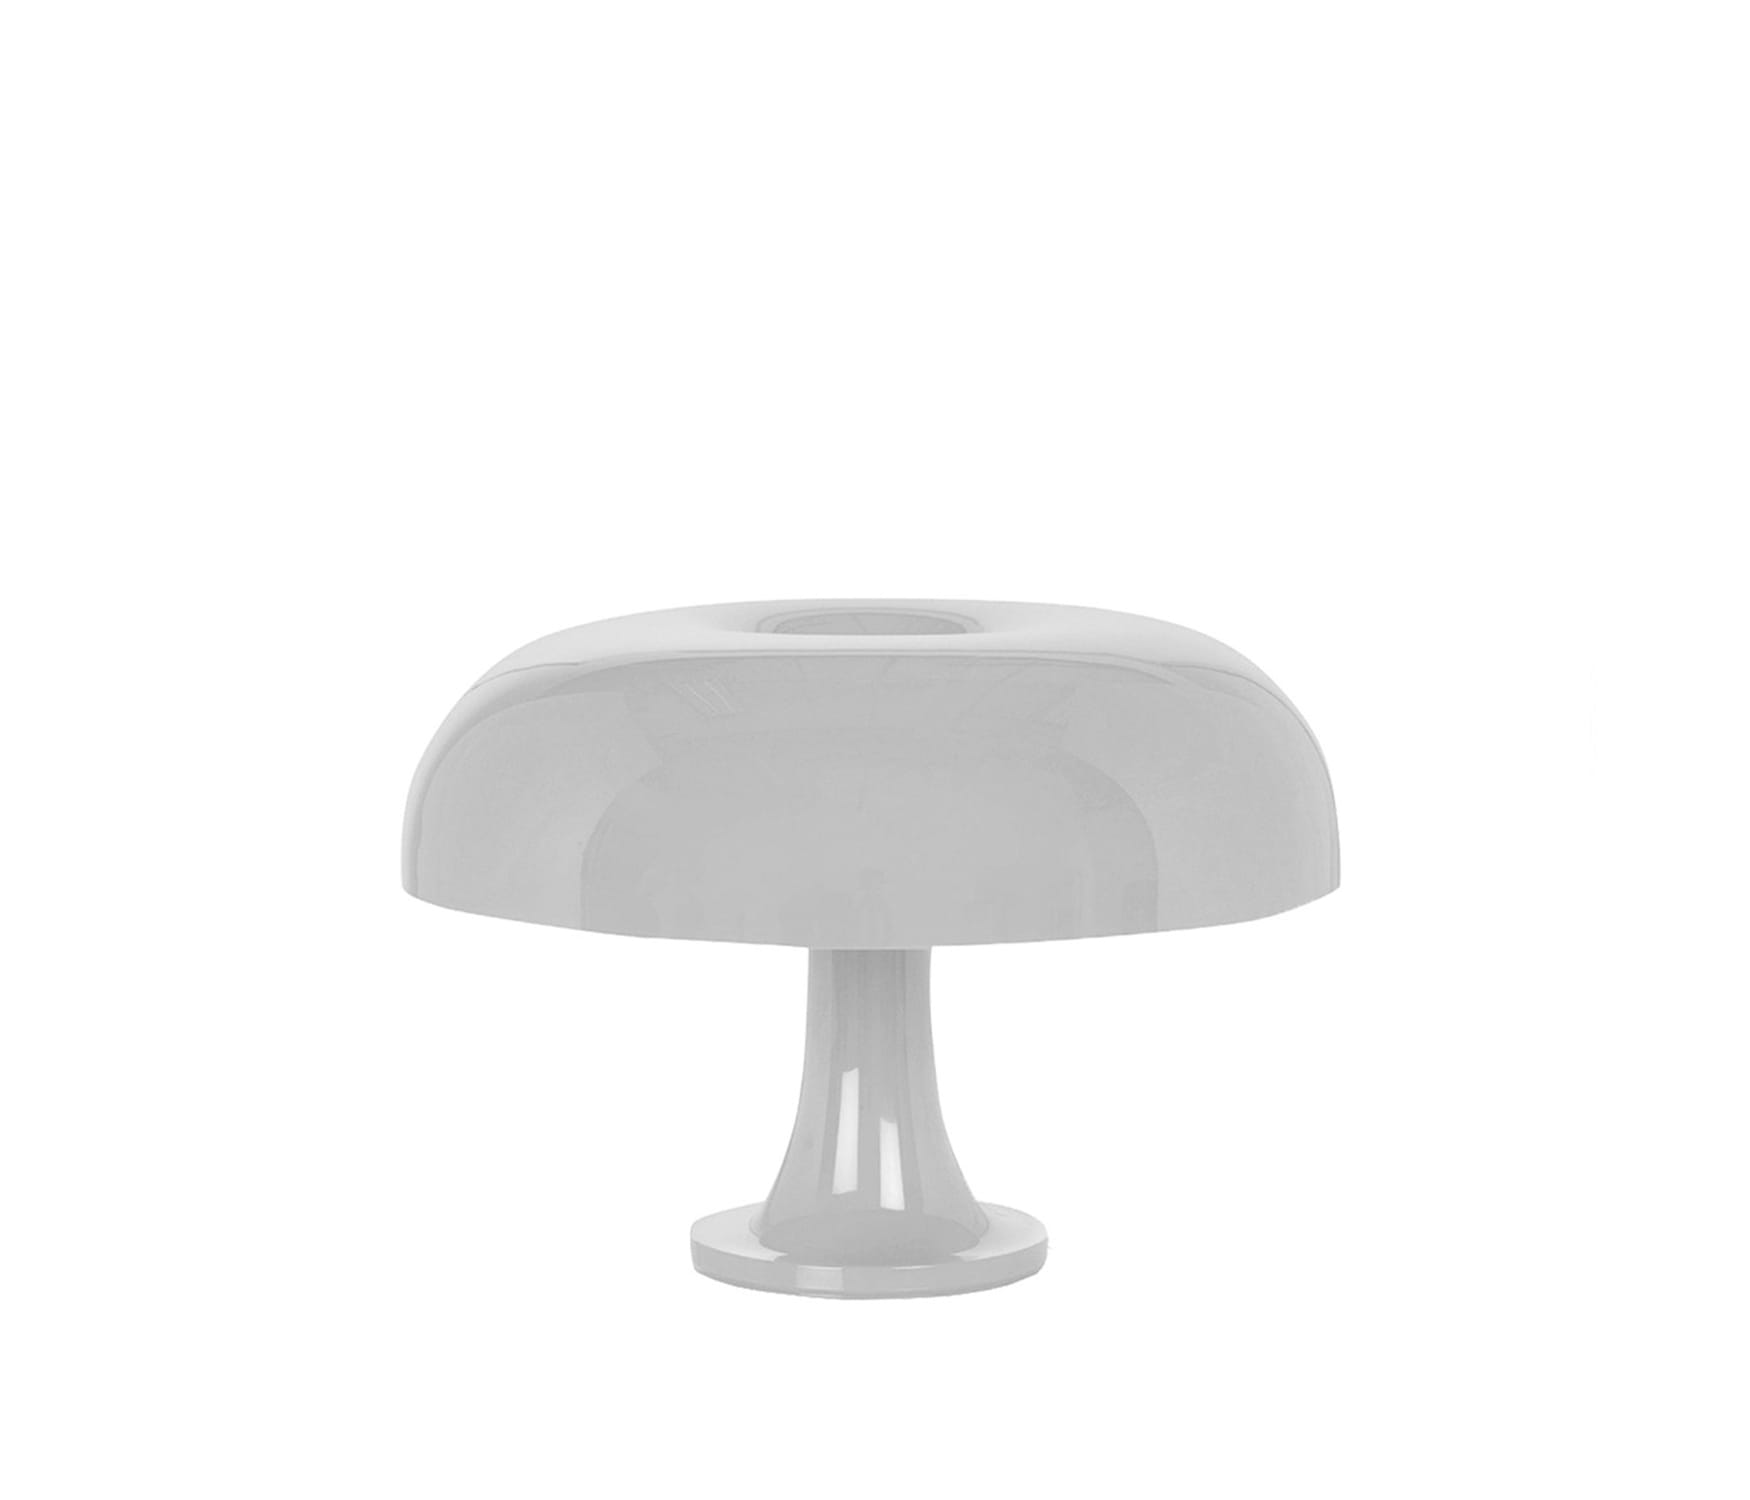 네시노 테이블 램프 - 화이트